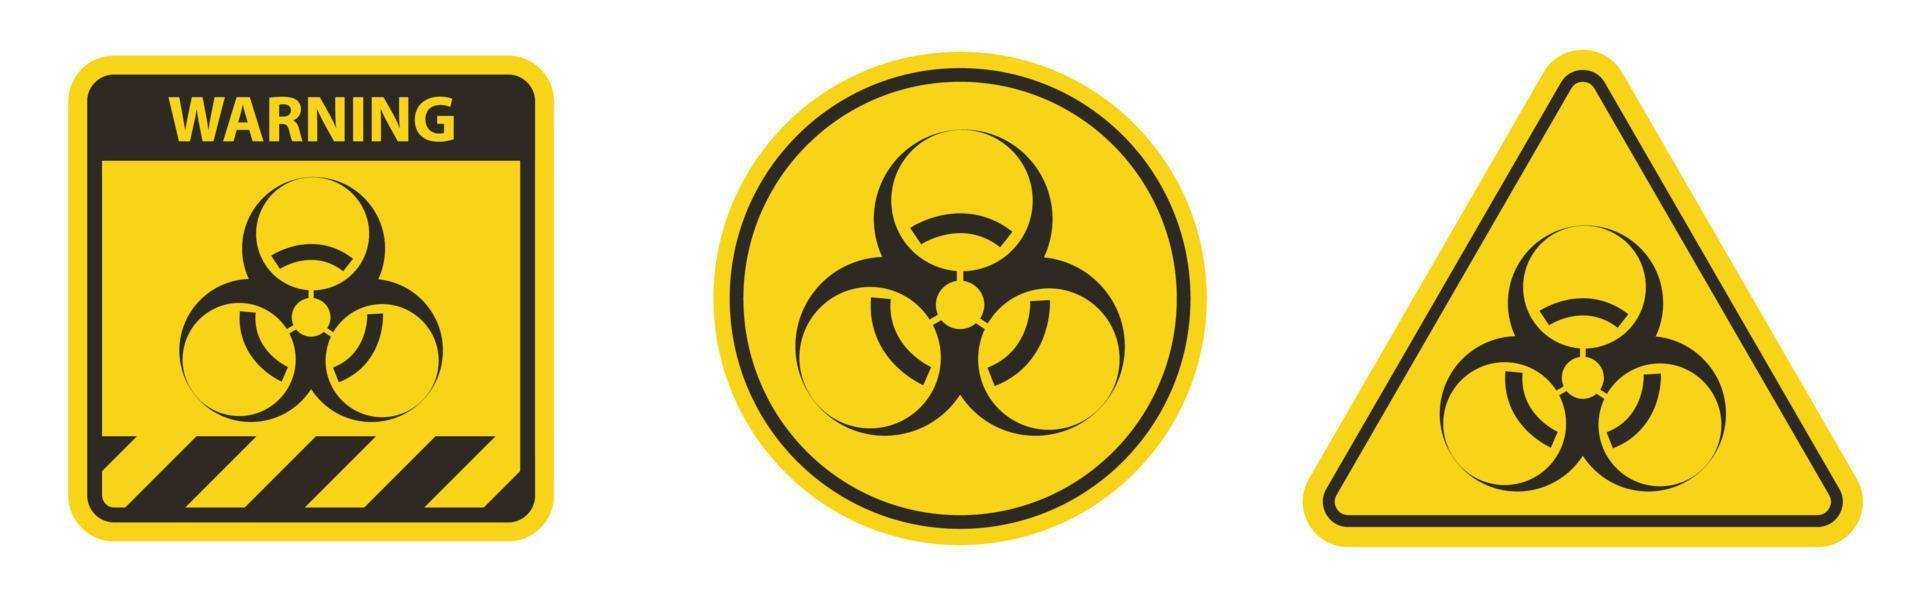 ícone preto de perigo biológico sobre fundo branco vetor